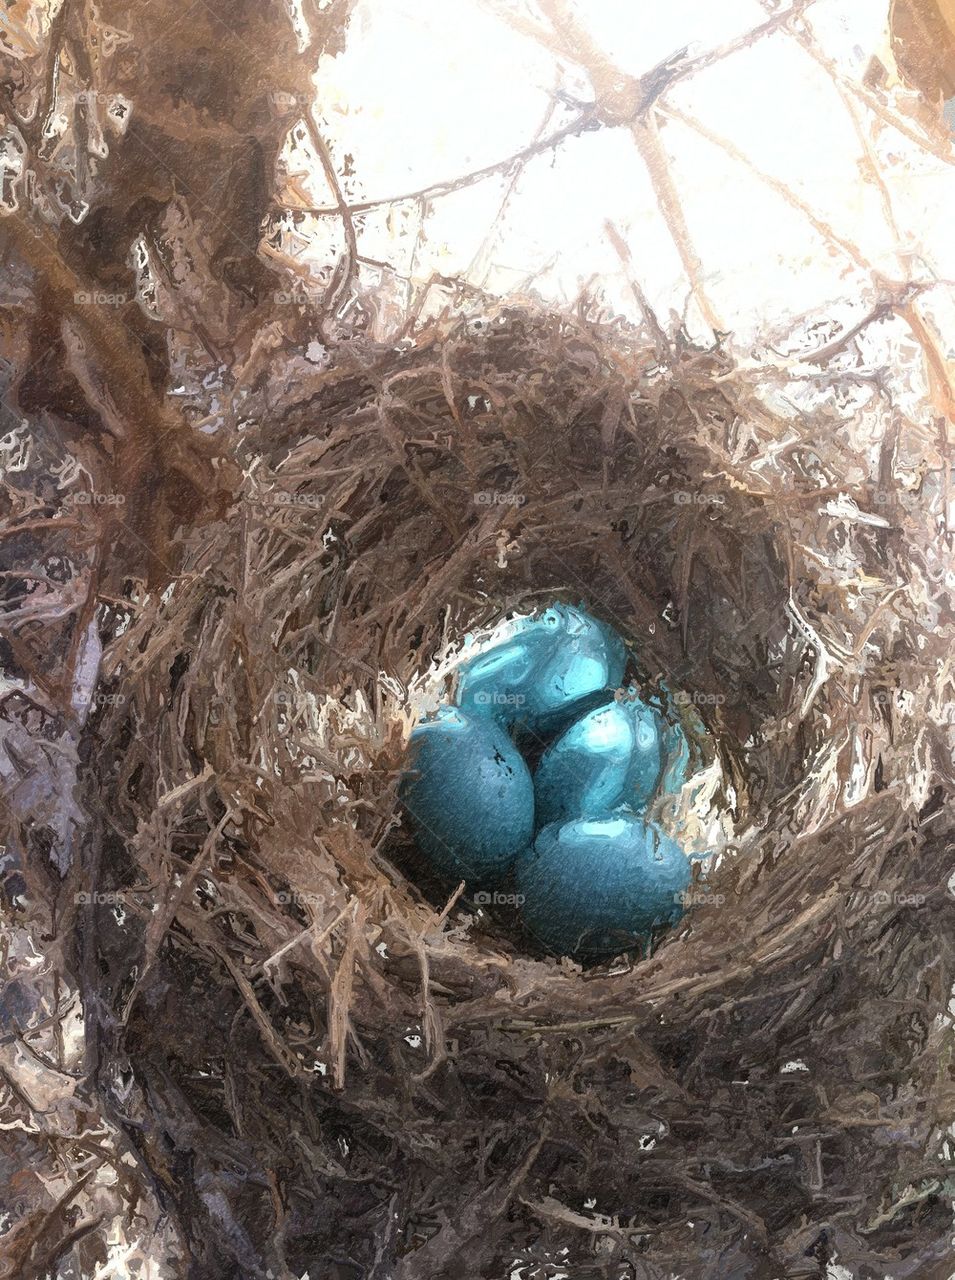 Robin's egg blue